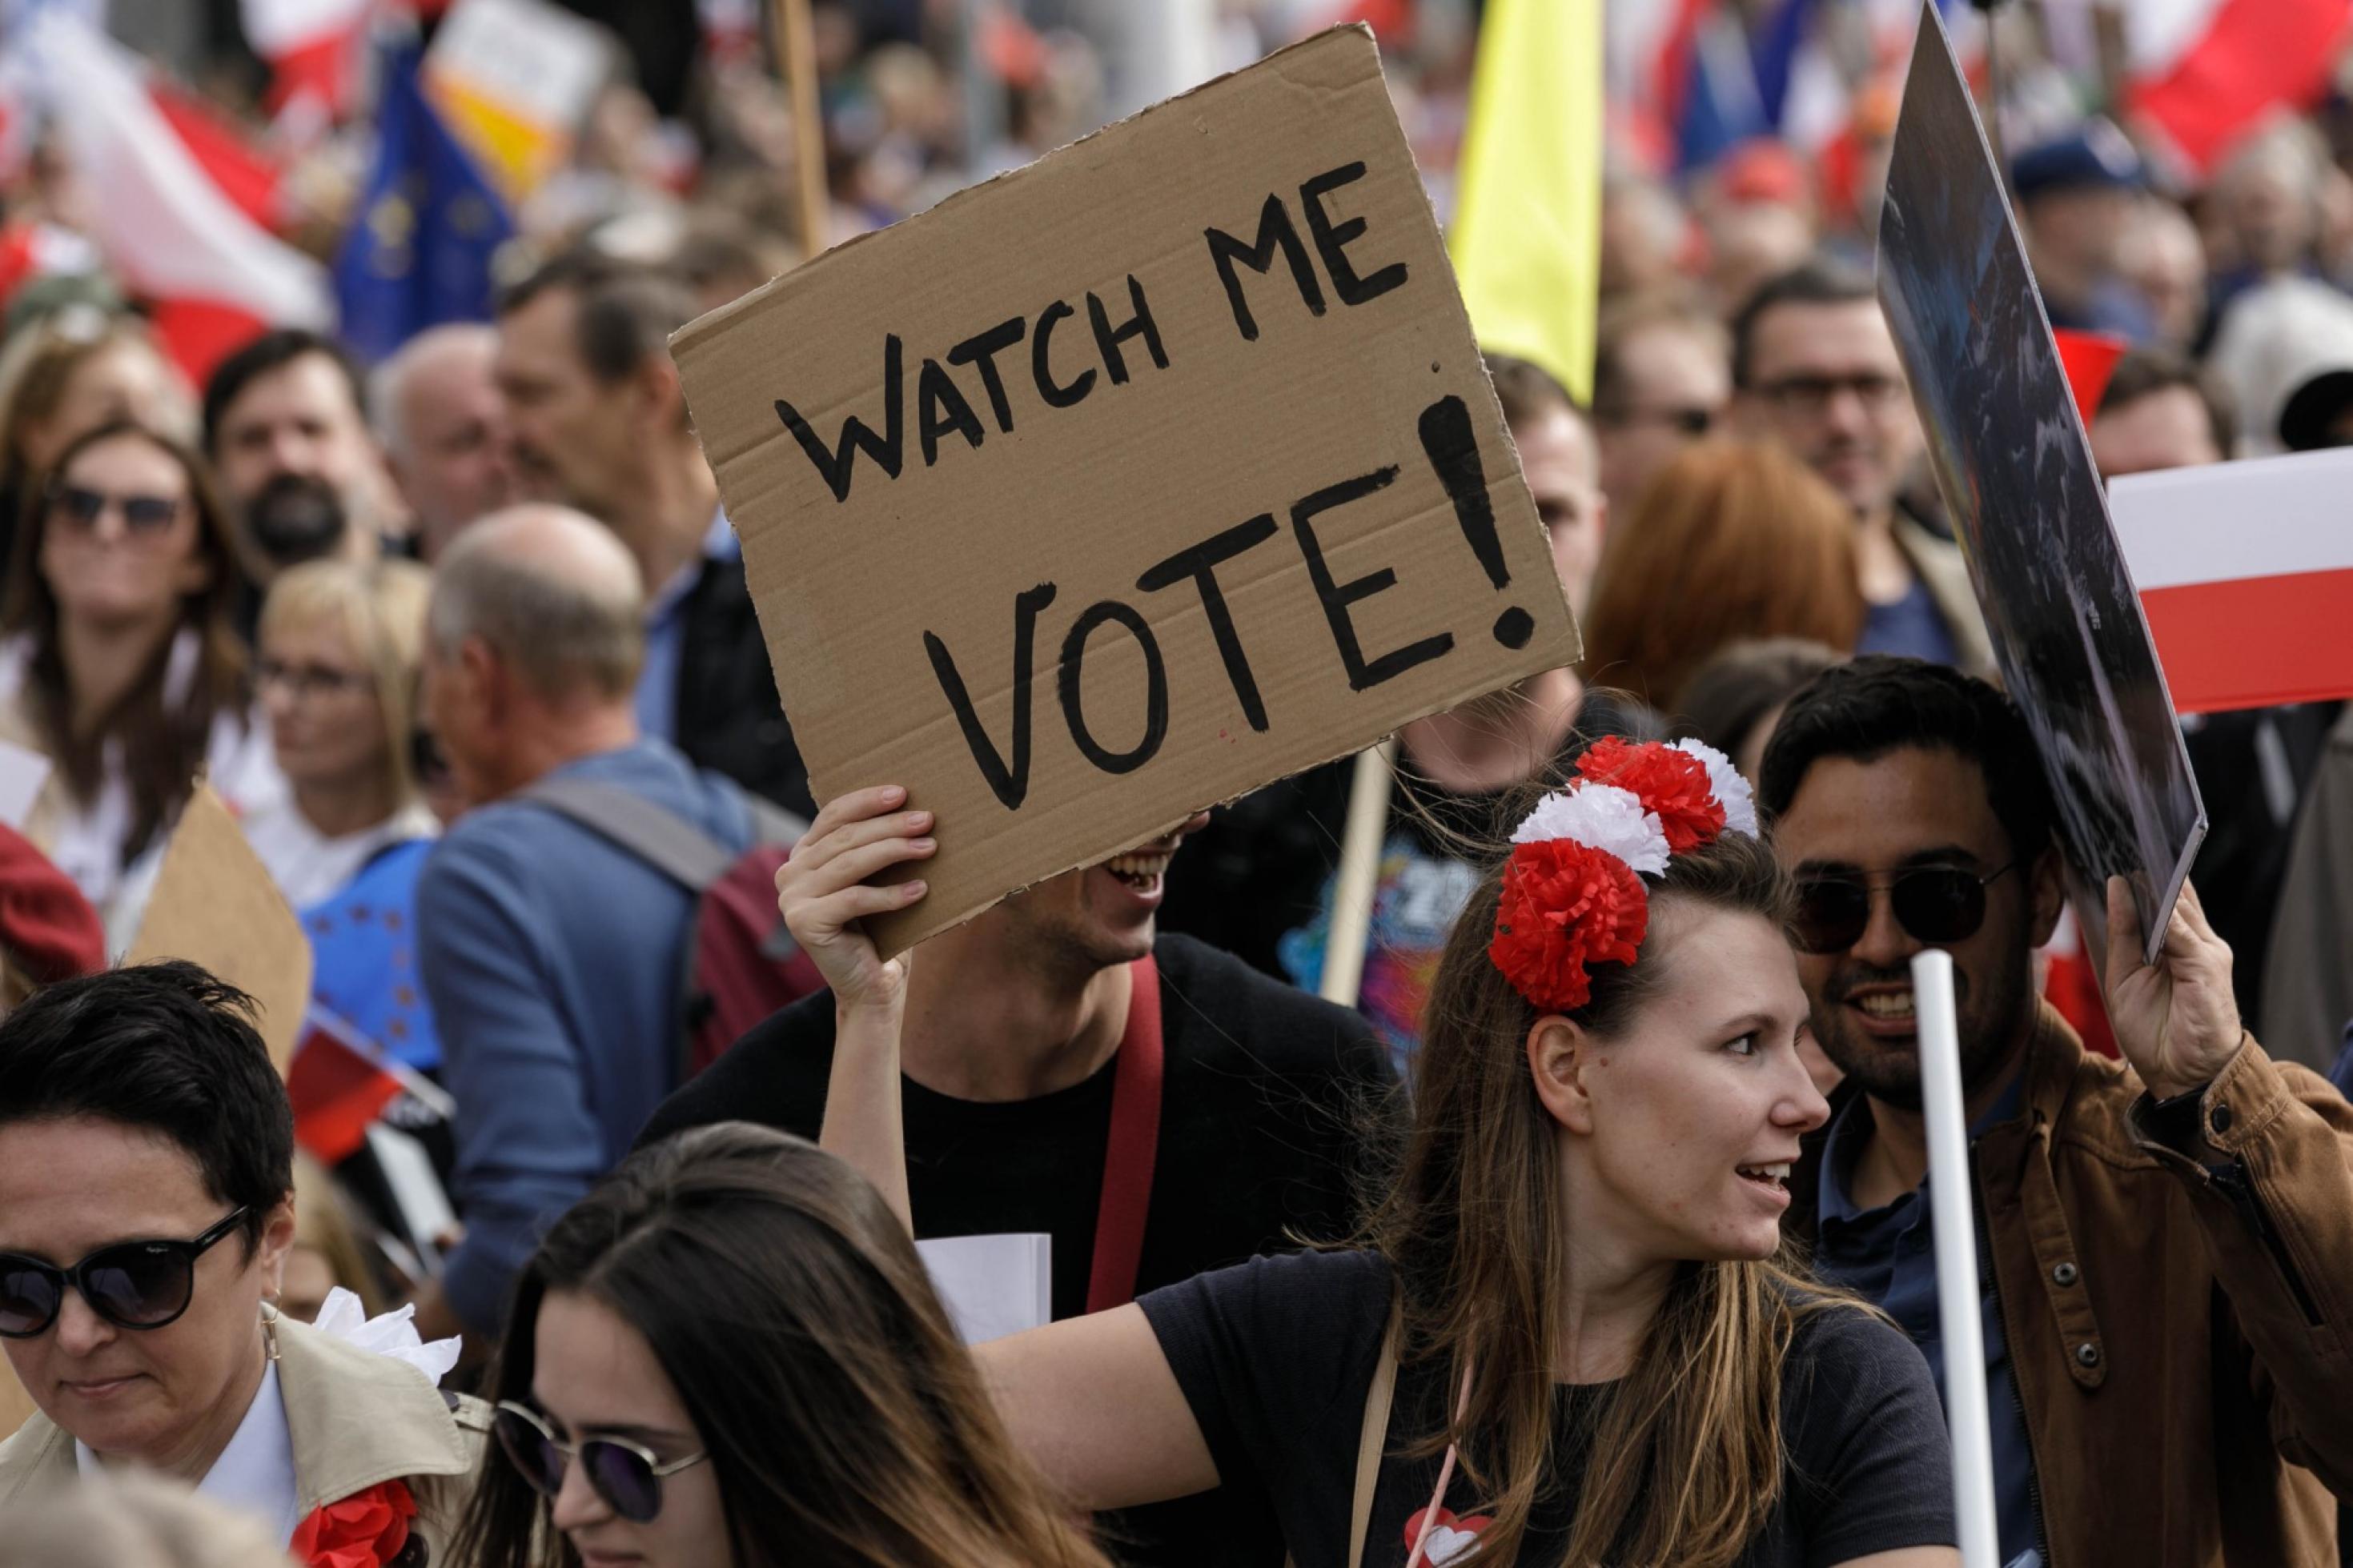 eine Gruppe von Menschen, die Schilder halten. Eine Frau hält ein Schild mit dem Spruch „Watch me Vote“